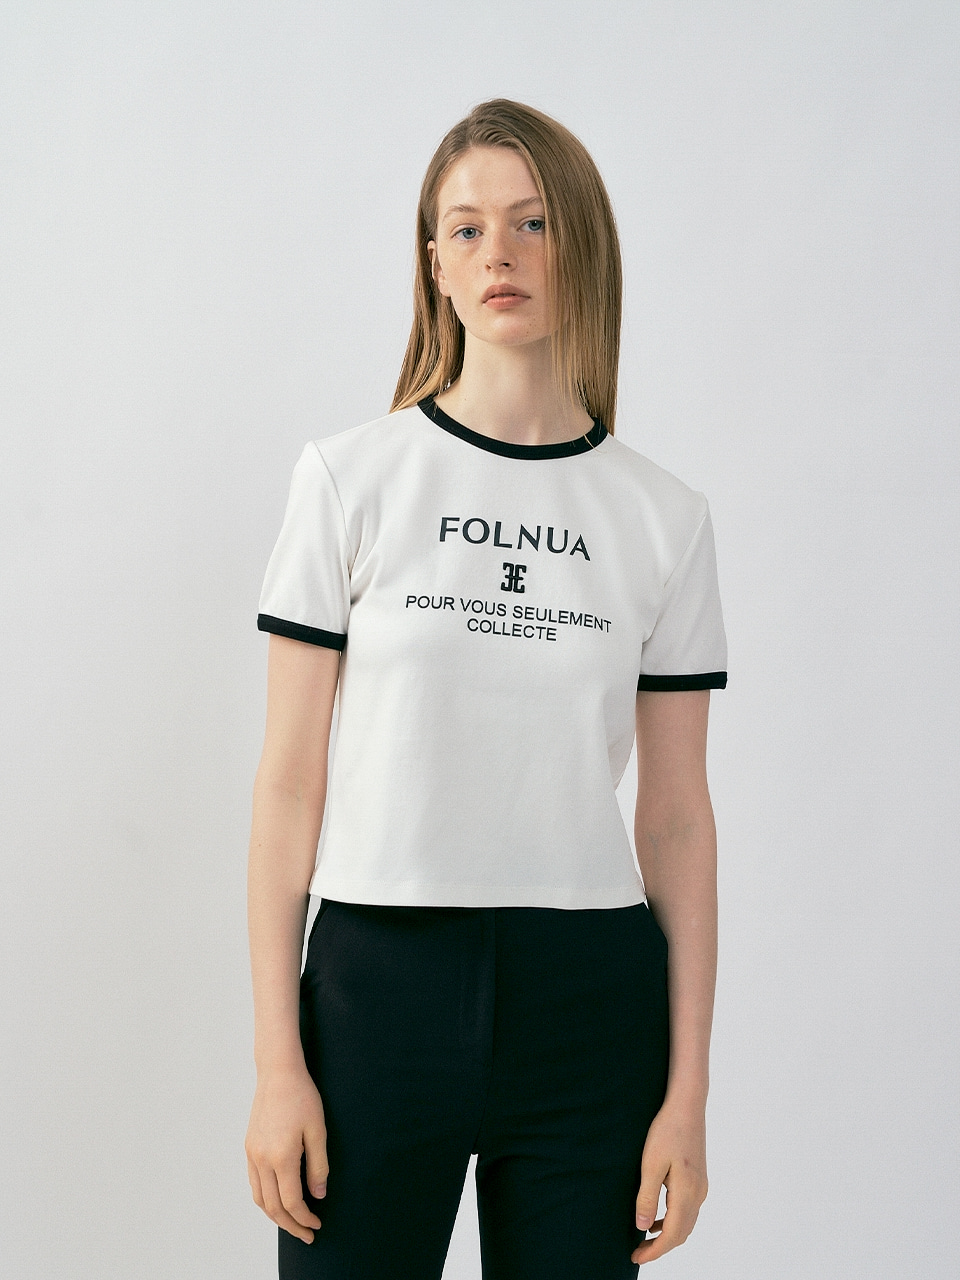 FOLNUA(フォルニュア) カラーレーションクラシックロゴTシャツ / ホワイトブラック